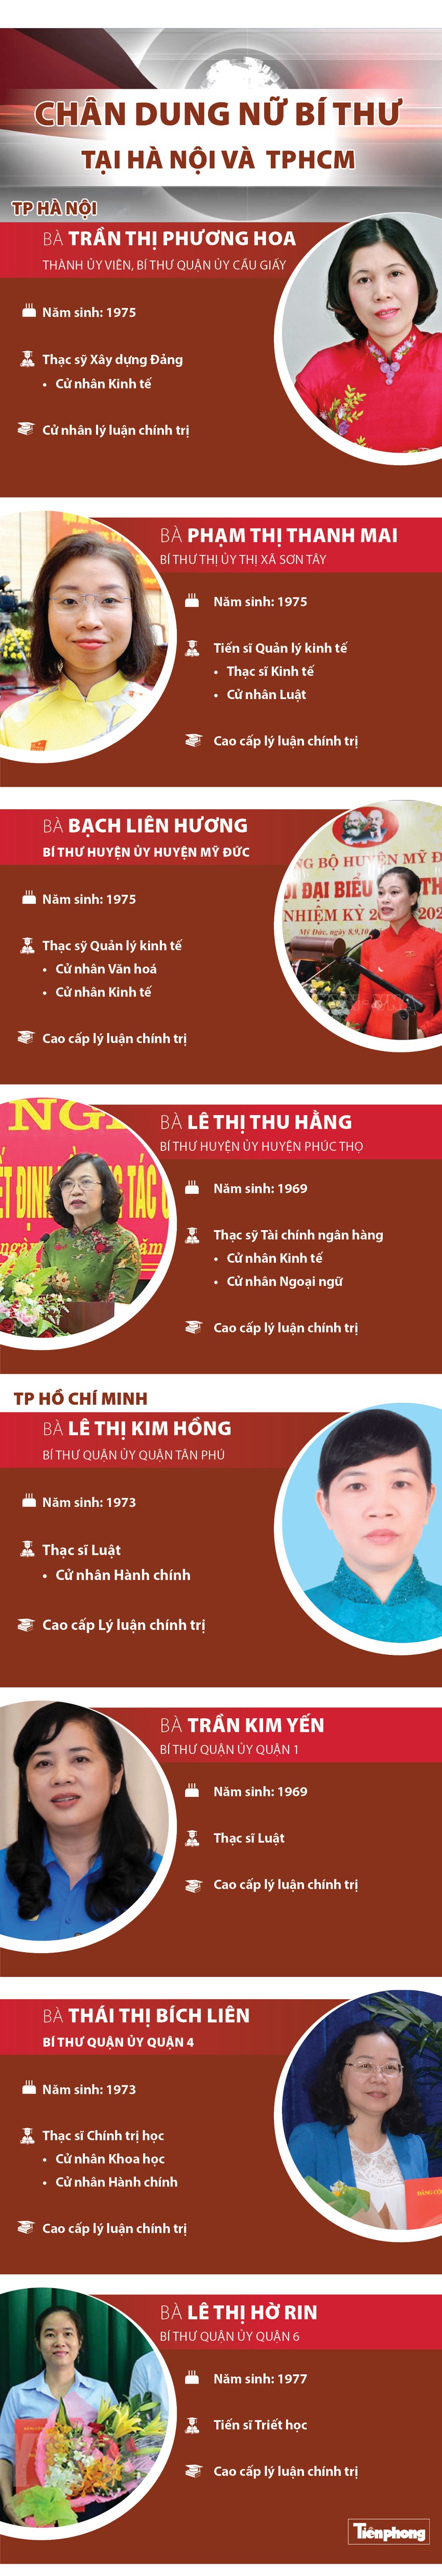 Chân dung 8 nữ Bí thư tại Hà Nội và TP.HCM - 1